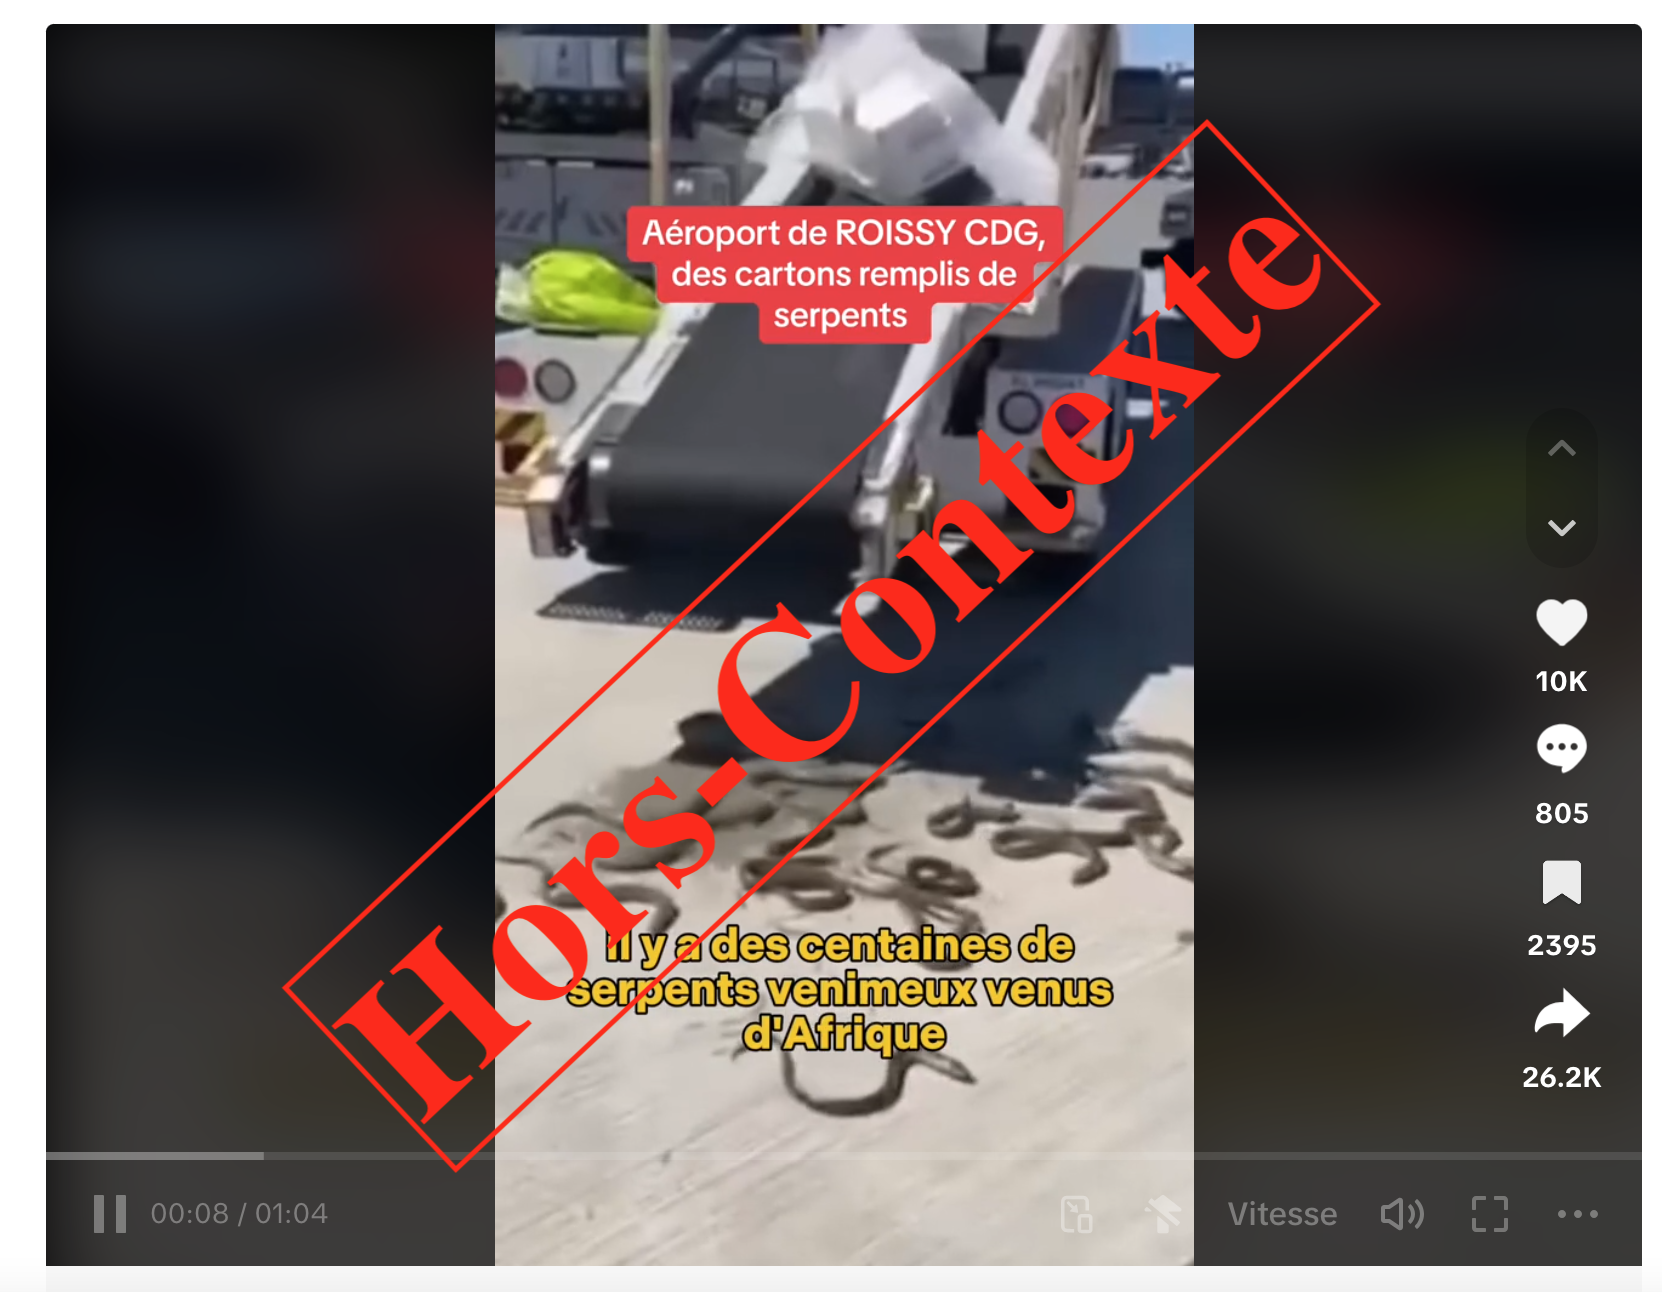  Faux, cette vidéo ne montre pas des serpents venus d’Afrique sur le tarmac de l’aéroport Roissy Charles de Gaulle